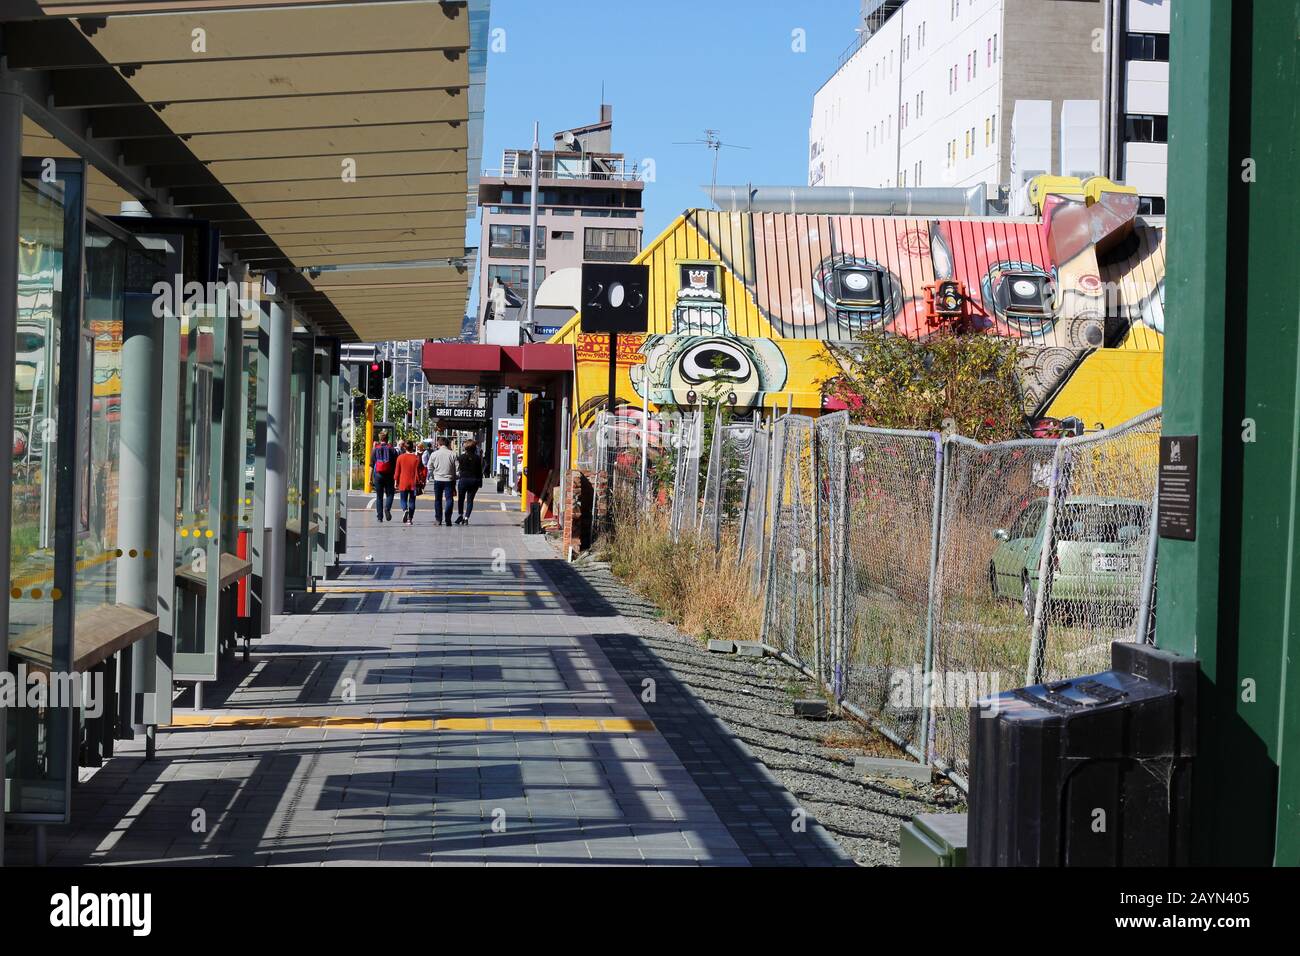 Schönheit und Normalität unter den Zerstörungen - Christchurch, NZ, wie sie sich auch nach dem Erdbeben 2011 wieder erholt Stockfoto